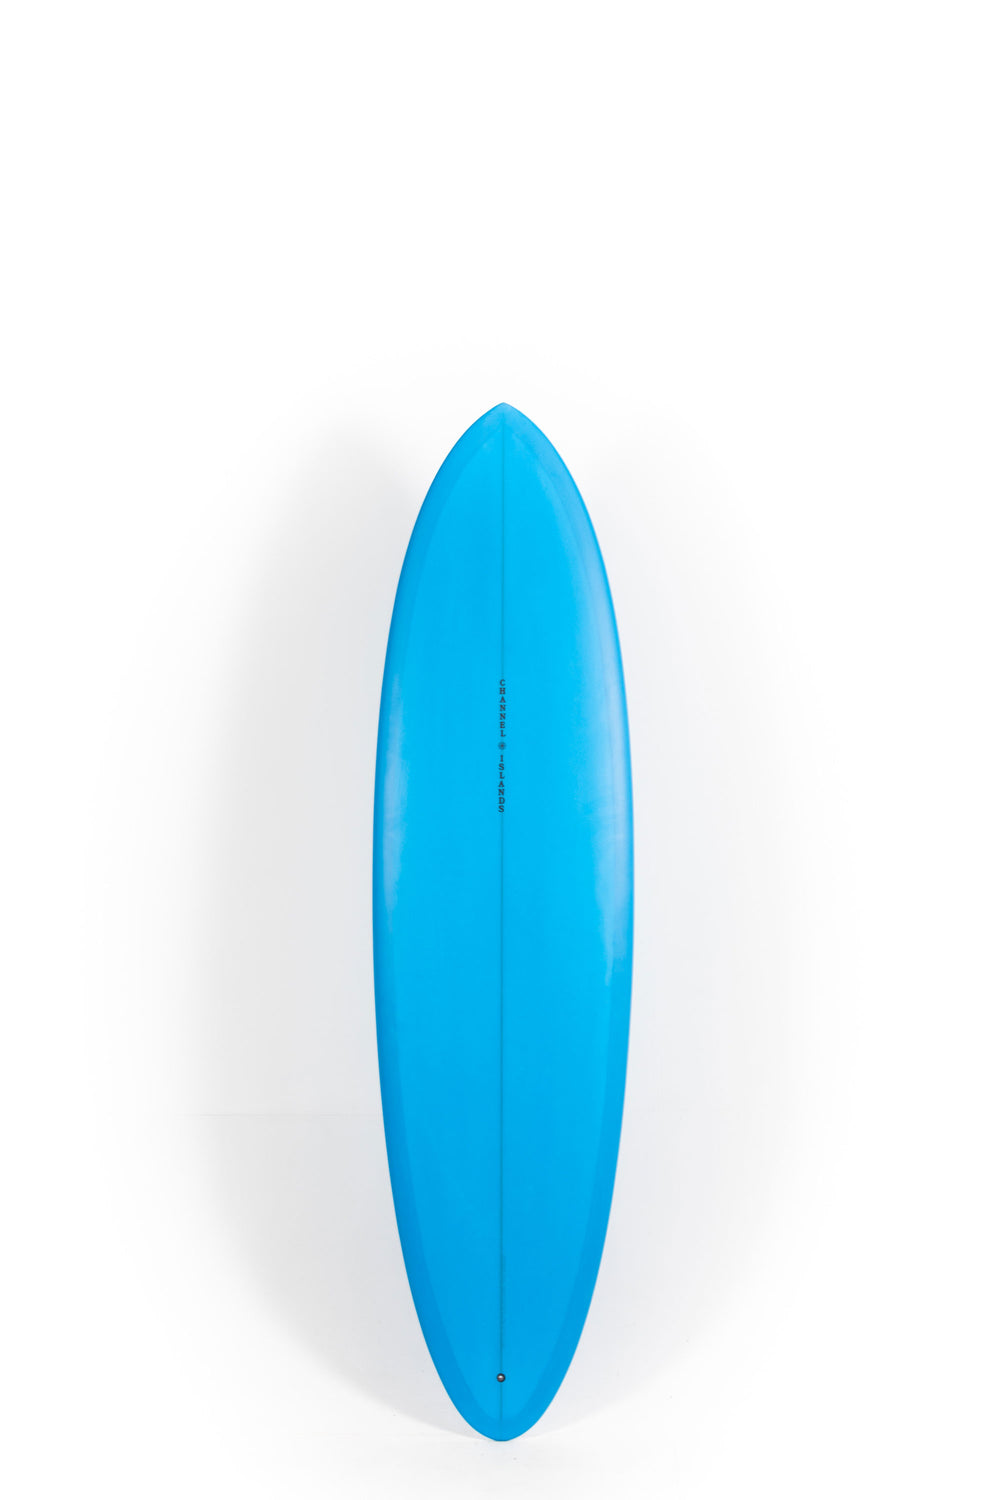 Pukas Surf shop - Channel Islands - CI MID - 6'10